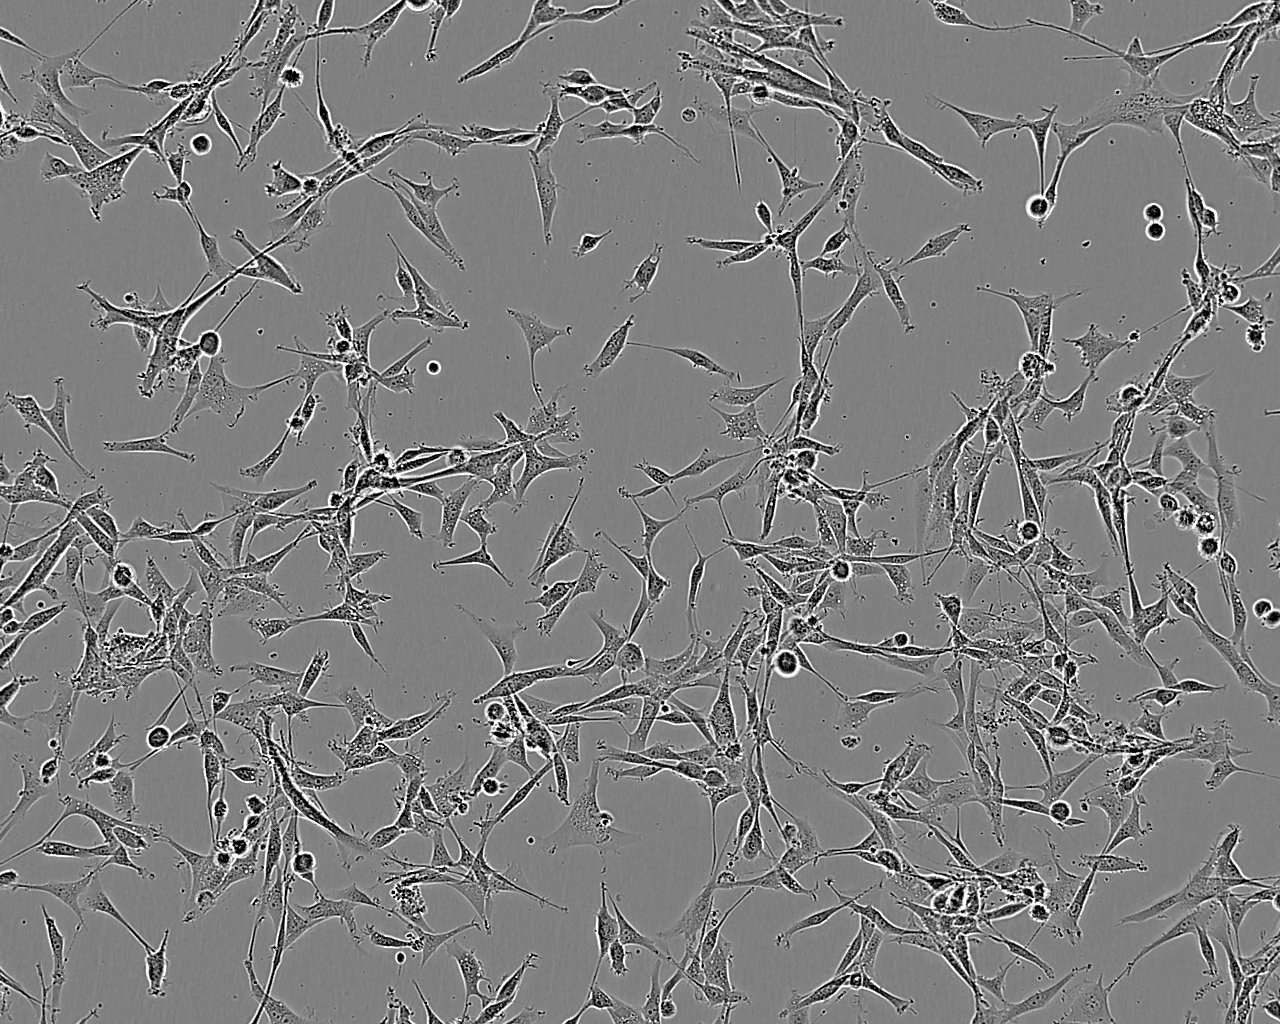 NCI-H2030 Cells|人非小细胞肺癌细胞系